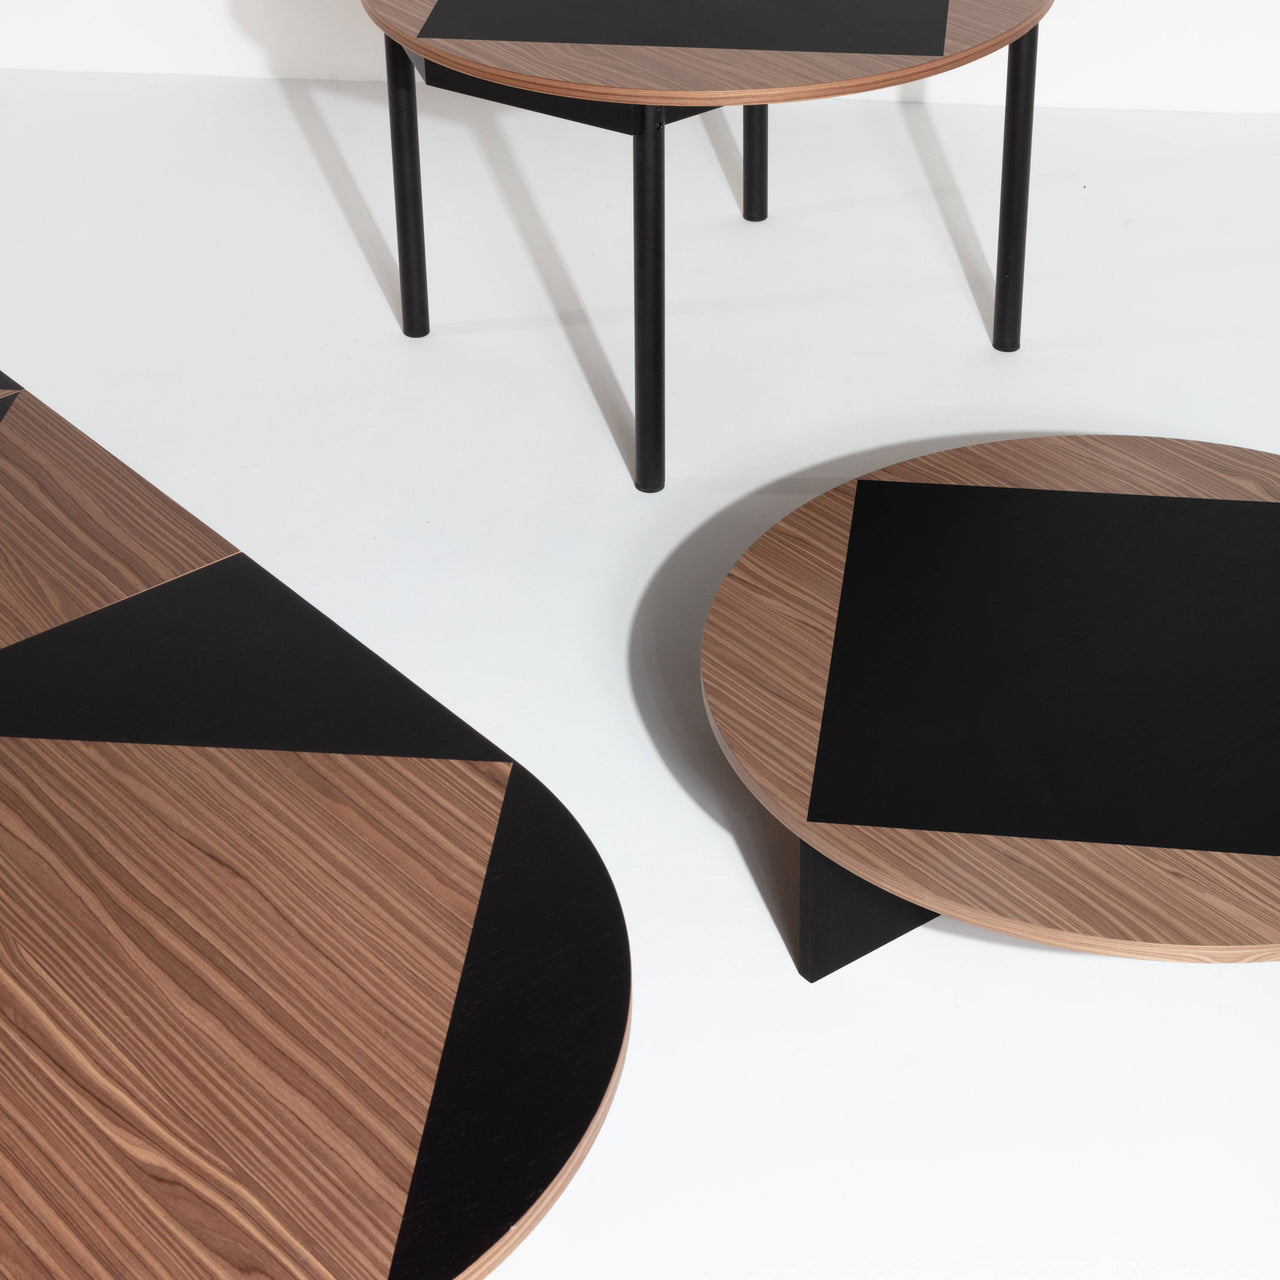 Tavla Extendable Wooden Table